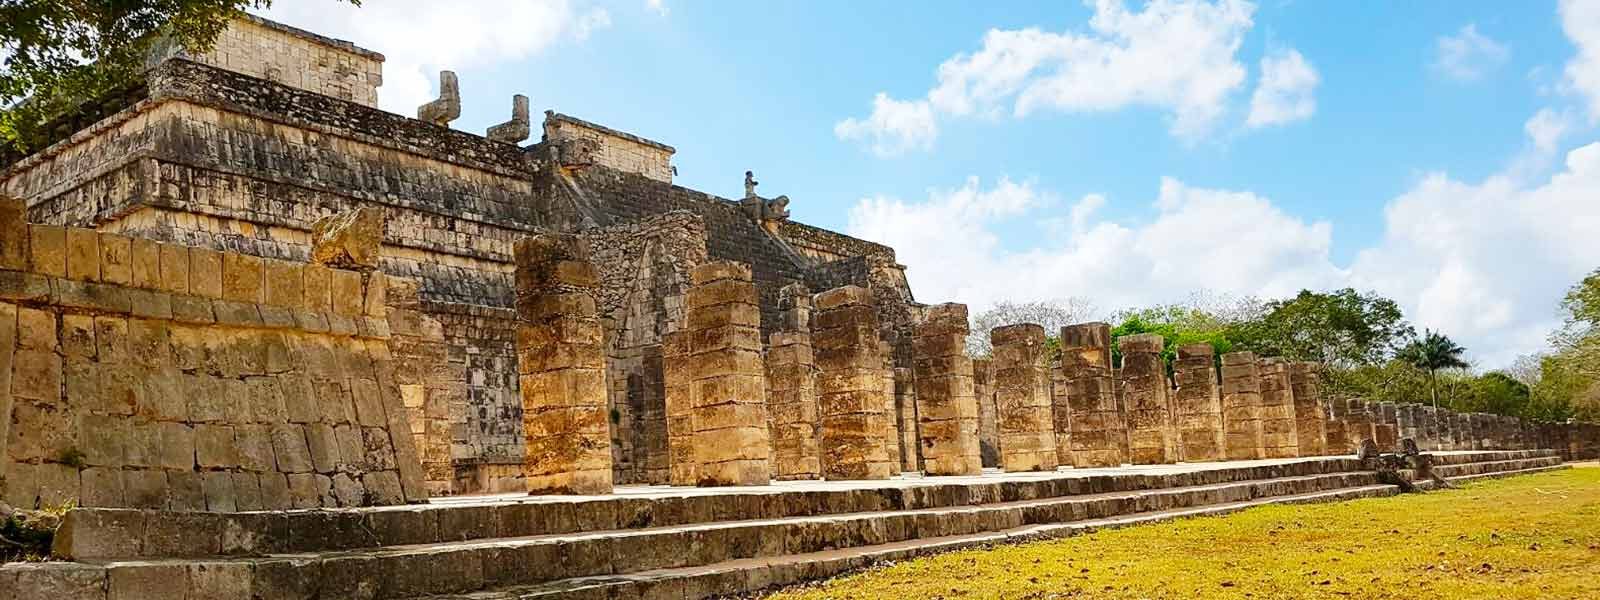 Een van de muren van Maya tempel Chichen Itza